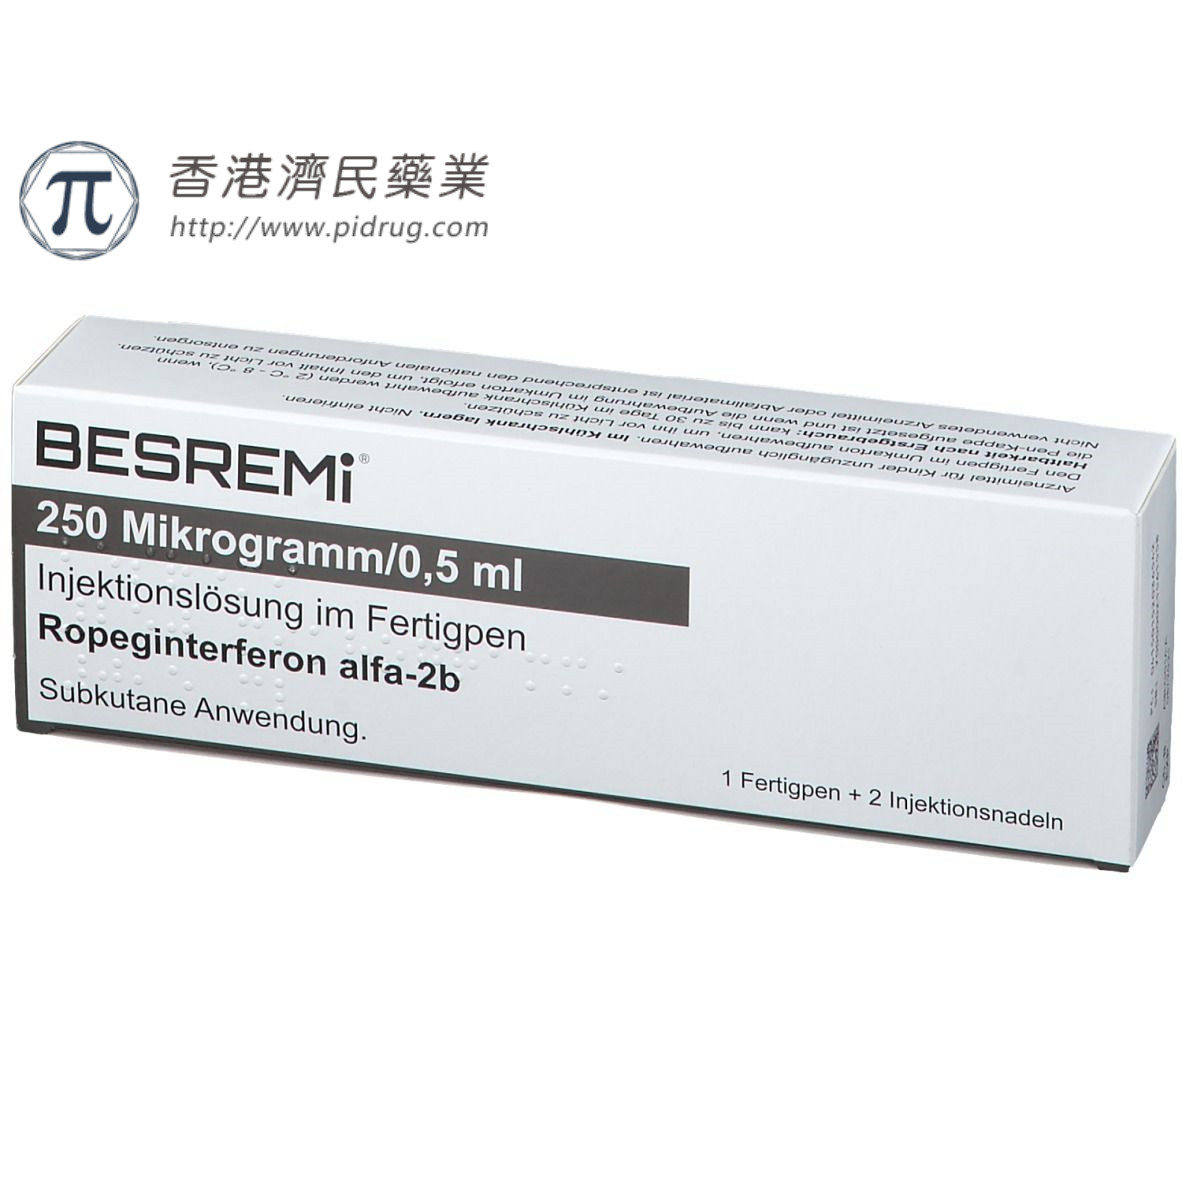 真性红细胞增多症(PV)新药Besremi®（ropeginterferonα-2B-njft） 获FDA批准_香港济民药业